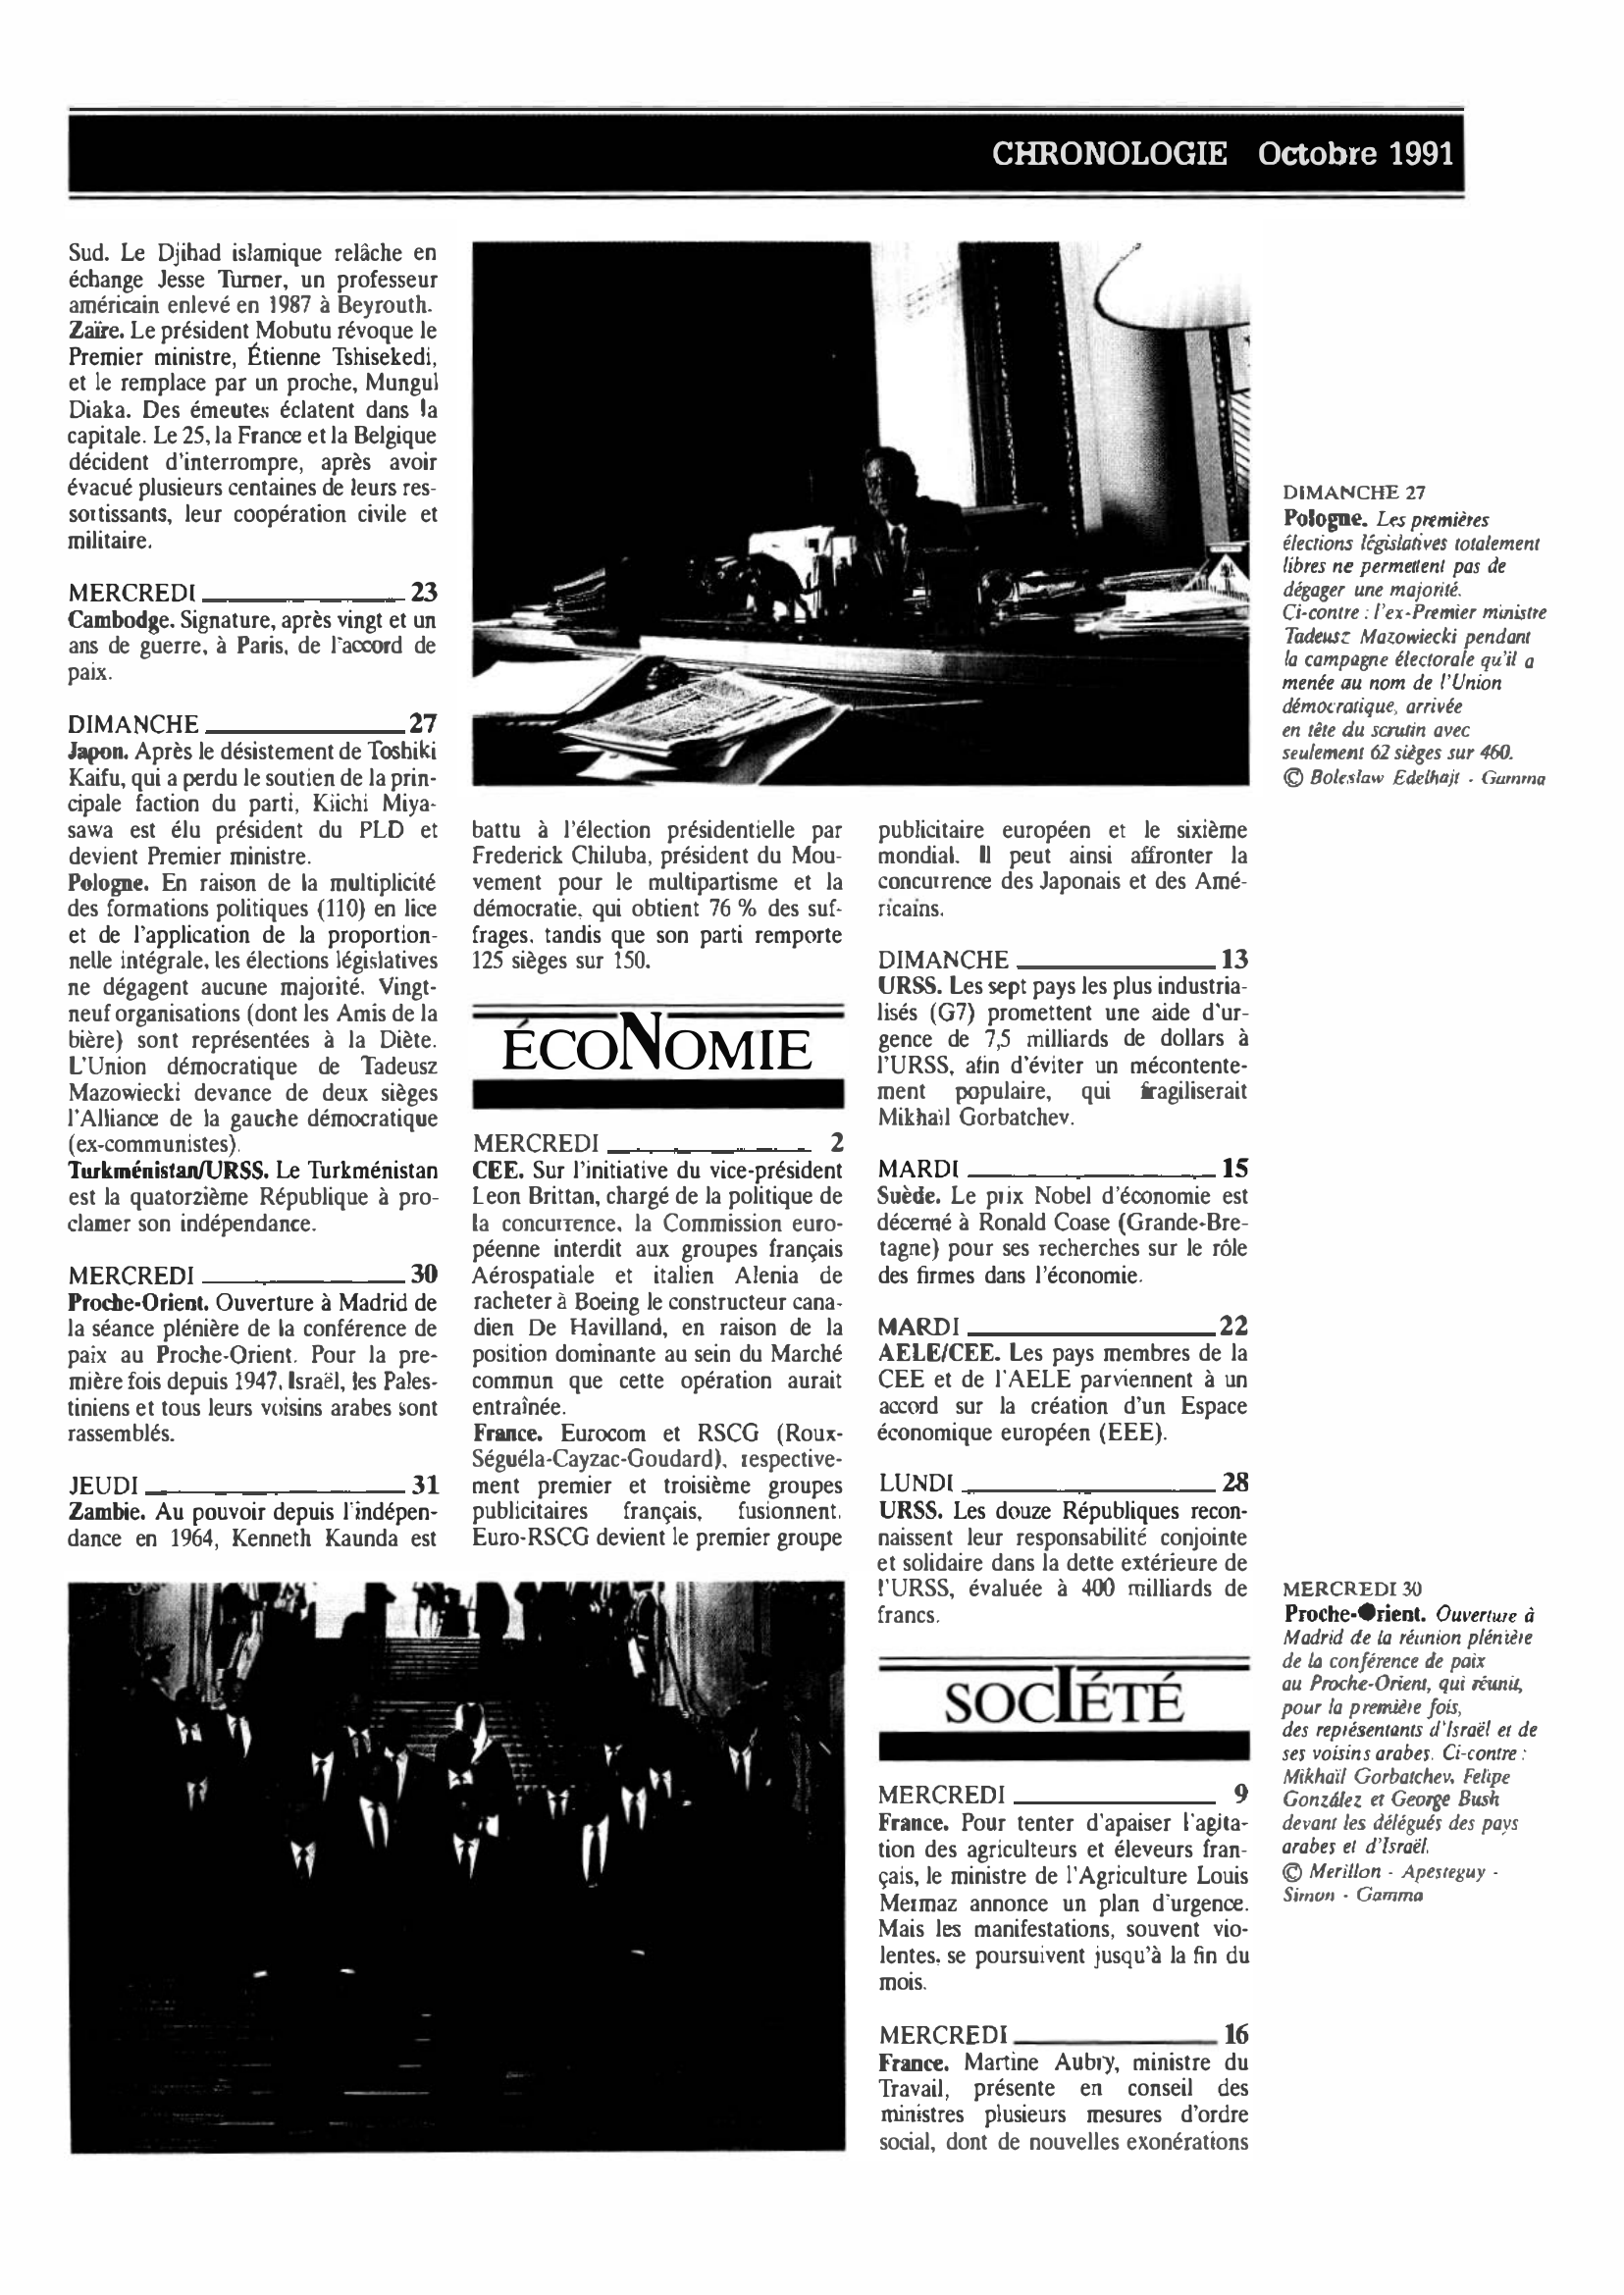 Prévisualisation du document CHRONOLOGIE Octobre 1991 dans le monde (histoire chronologique)